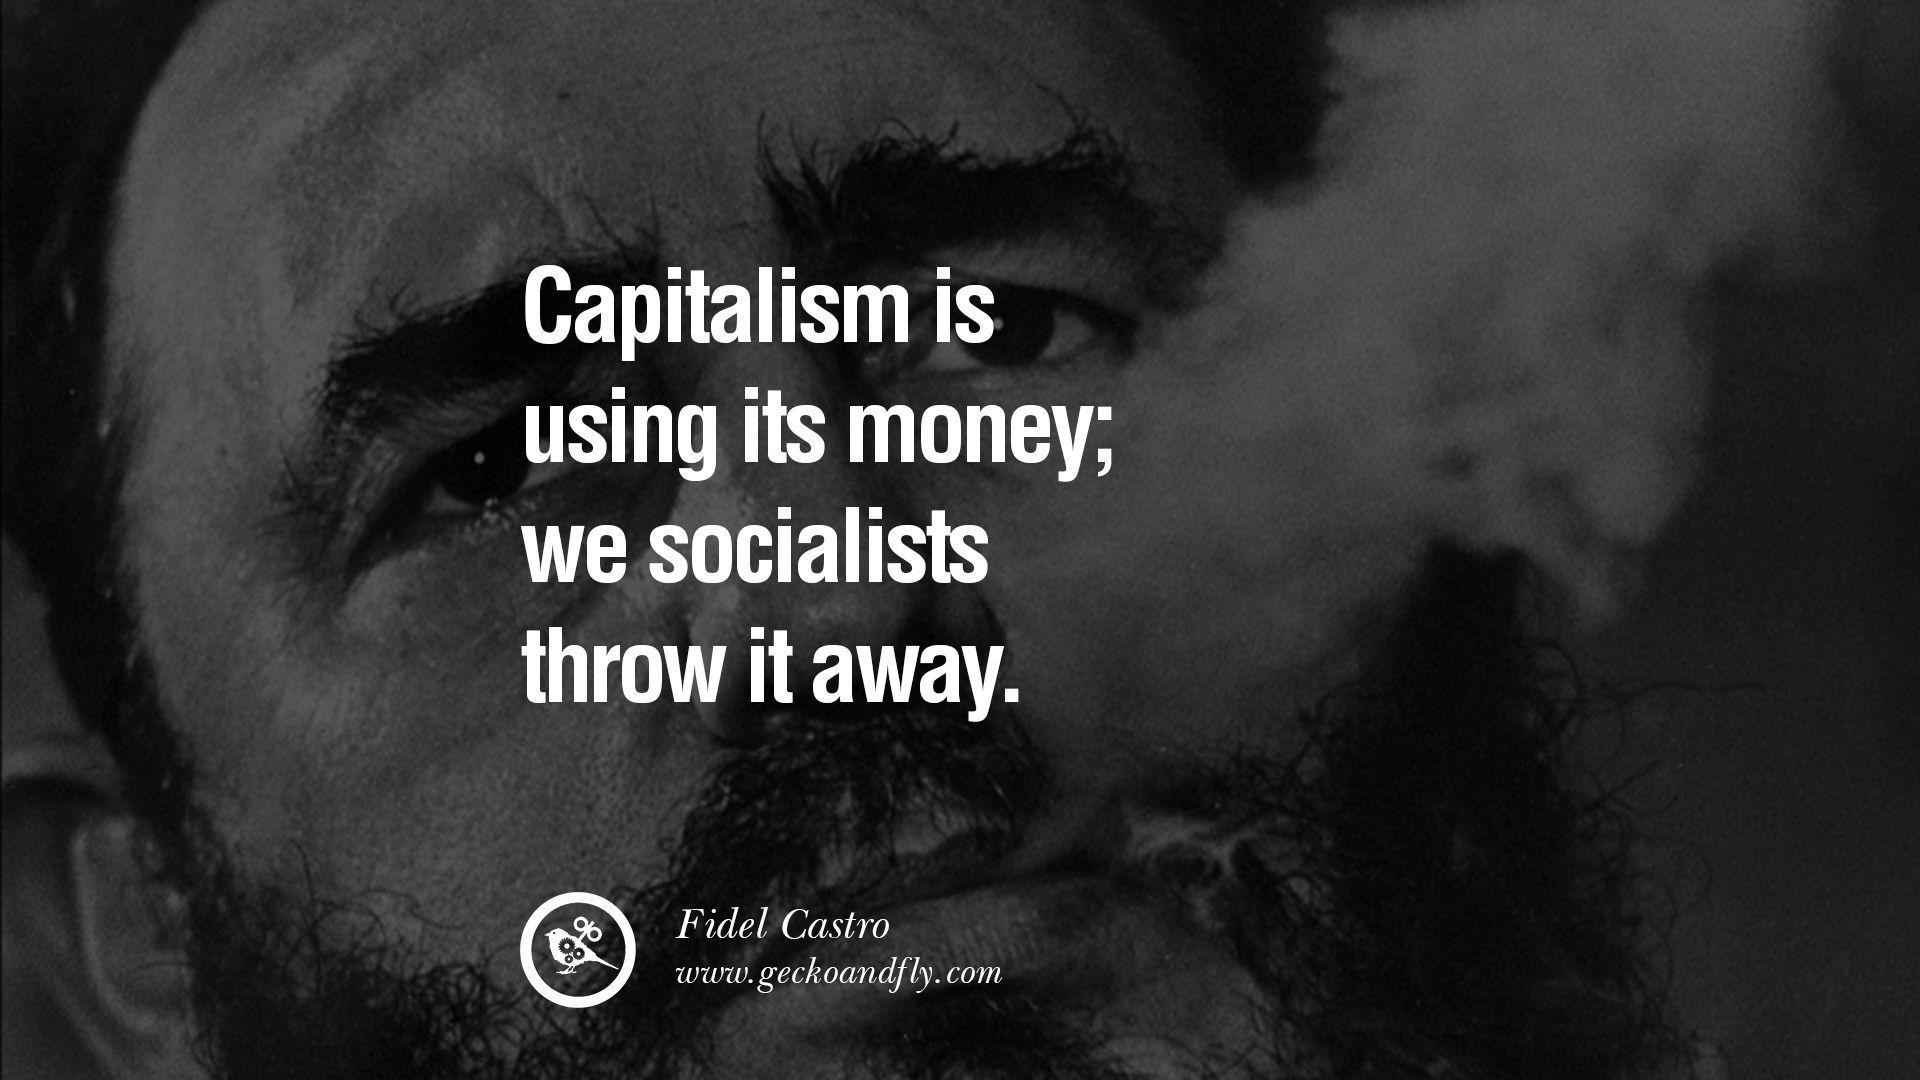 Quotes by Fidel Castro and Ernesto Che Guevara